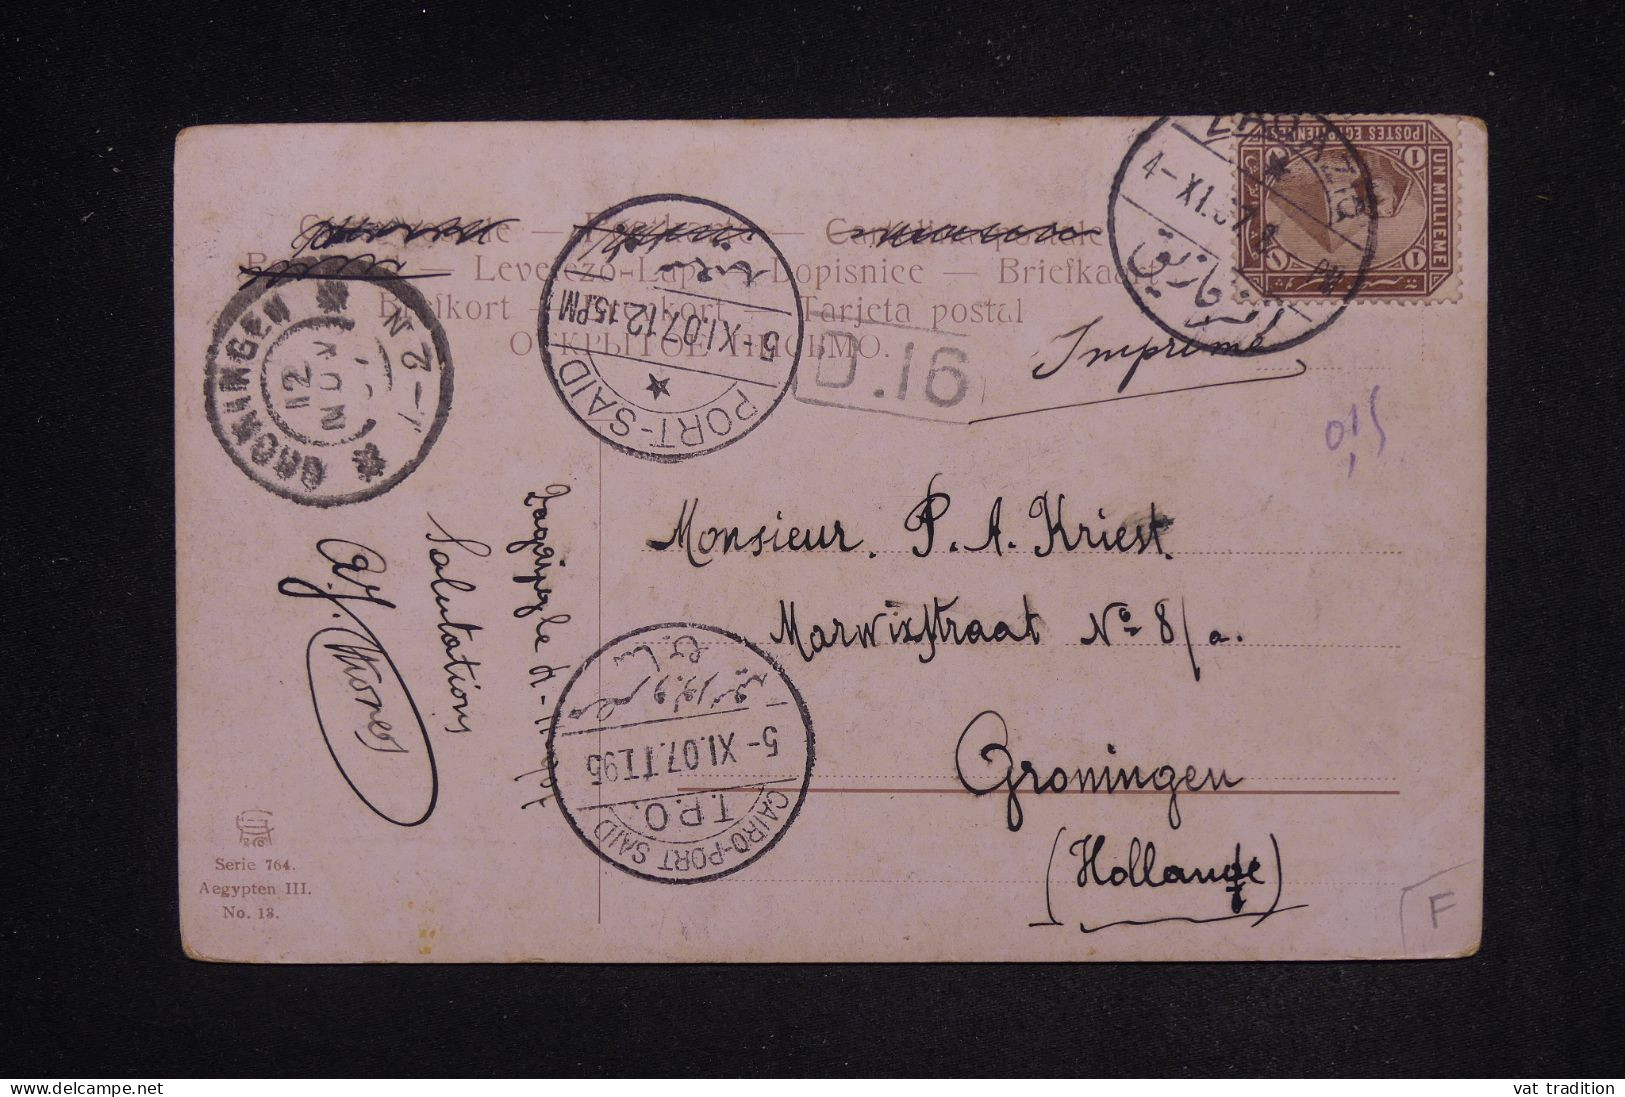 EGYPTE - Affranchissement De Zagazig Sur Carte Postale Pour Les Pays Bas En 1907 - L 149419 - 1866-1914 Khédivat D'Égypte